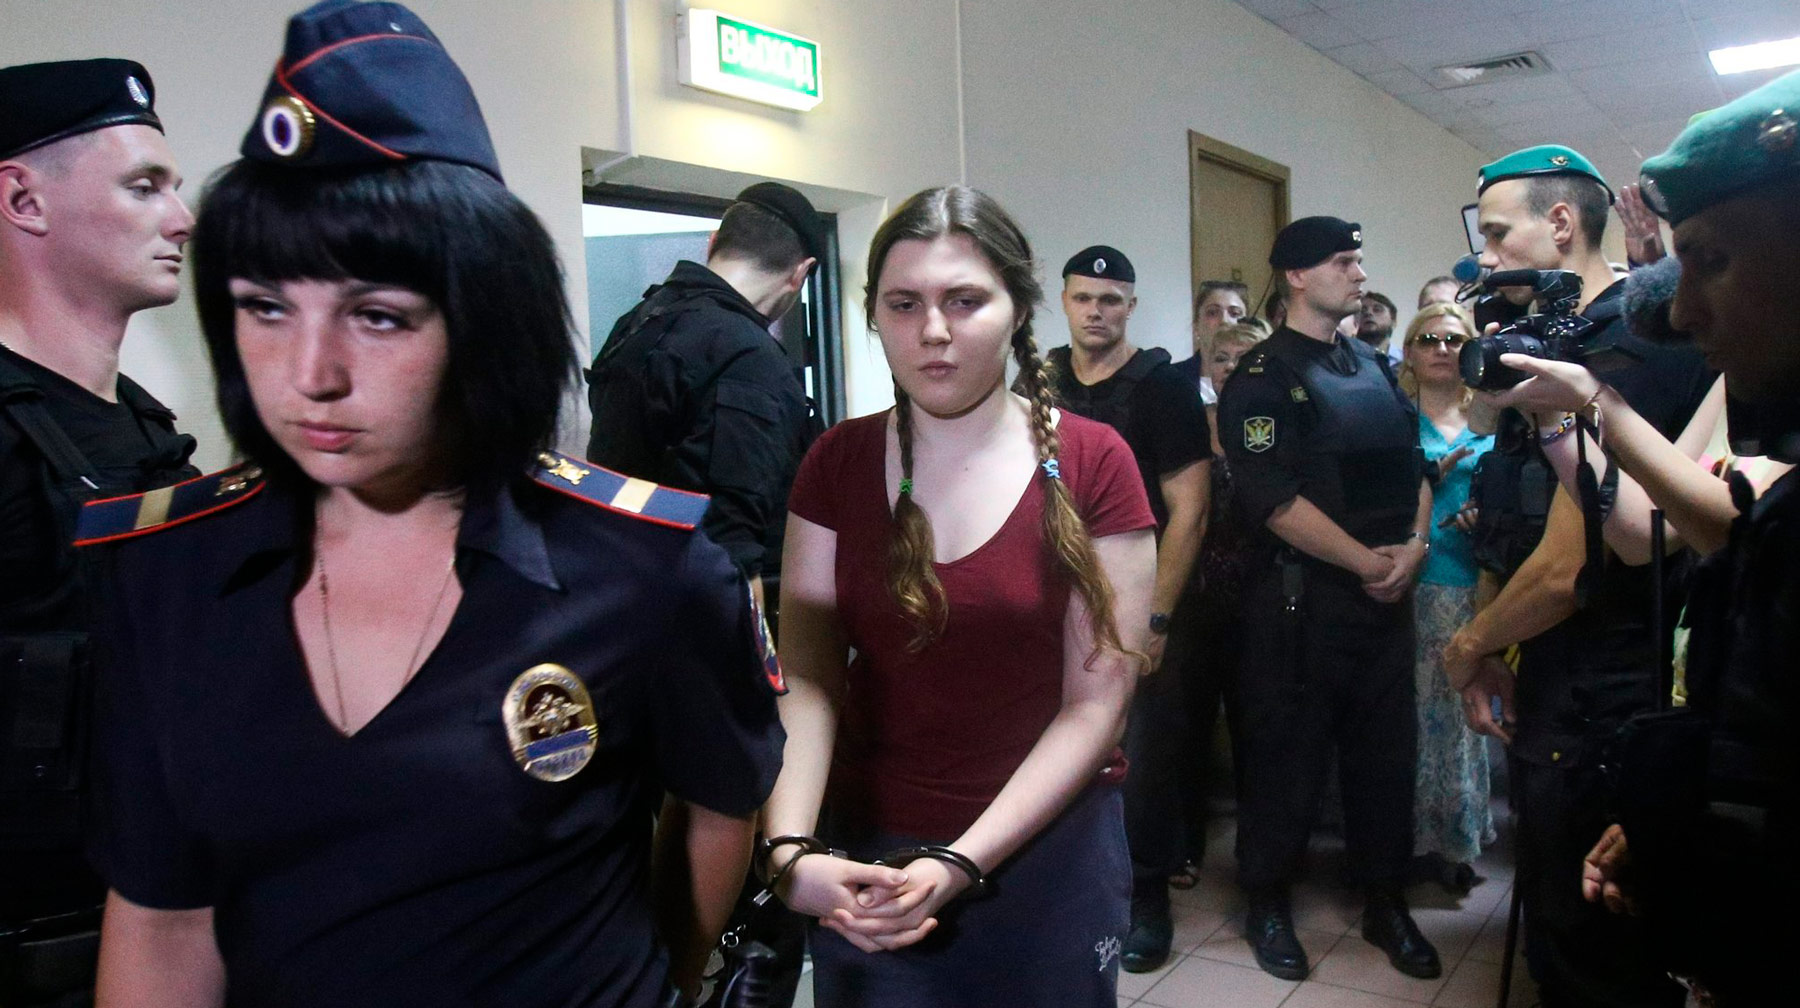 За последние полгода интерес журналистов к процессу заметно снизился Фото: © Агентство Москва / Никеричев Андрей